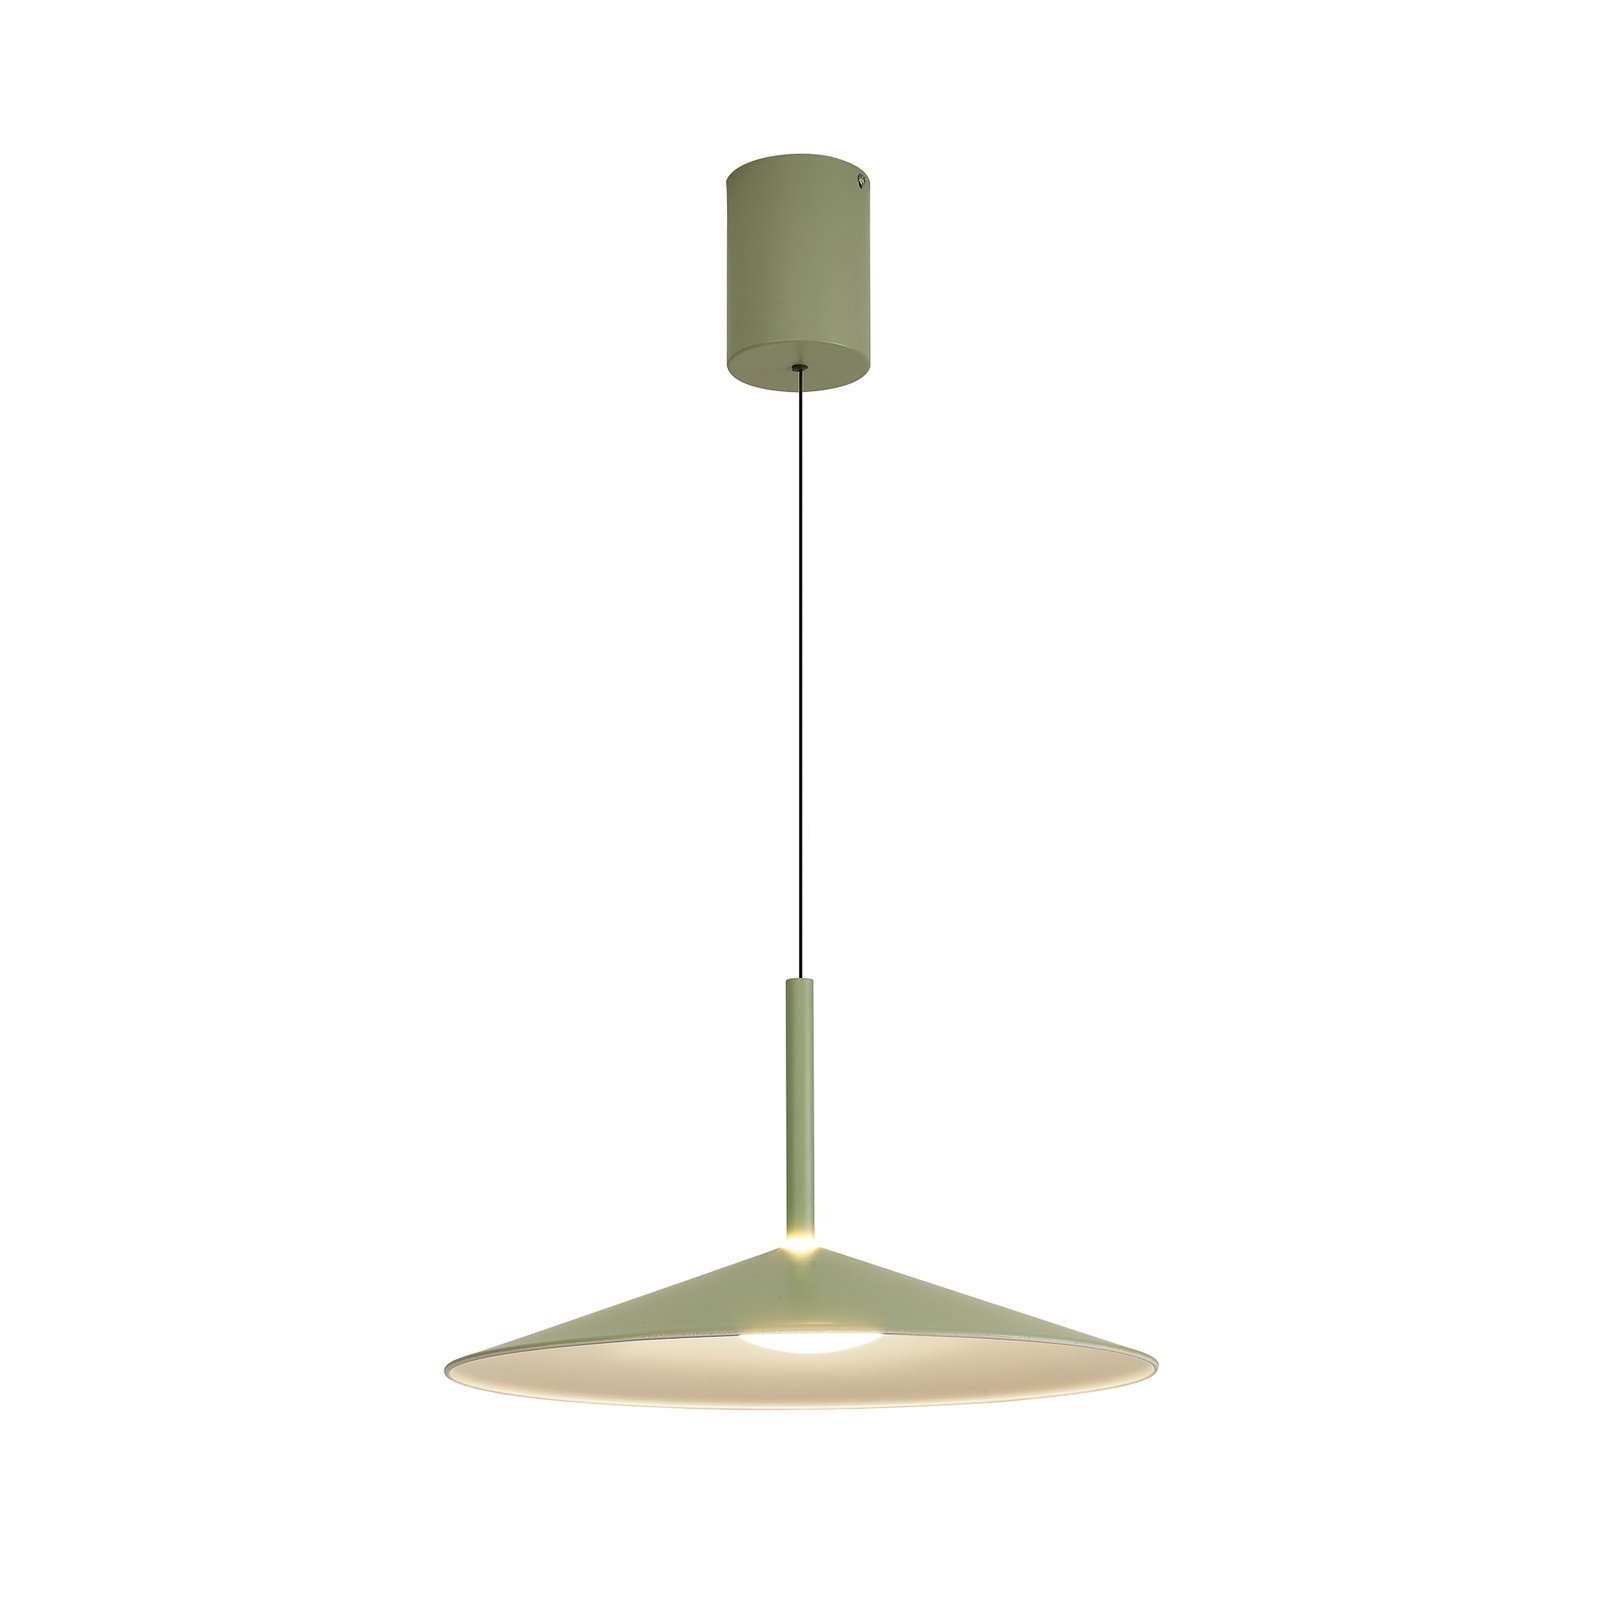 Calice hanglamp, groen, Ø 47,5 cm, in hoogte verstelbaar